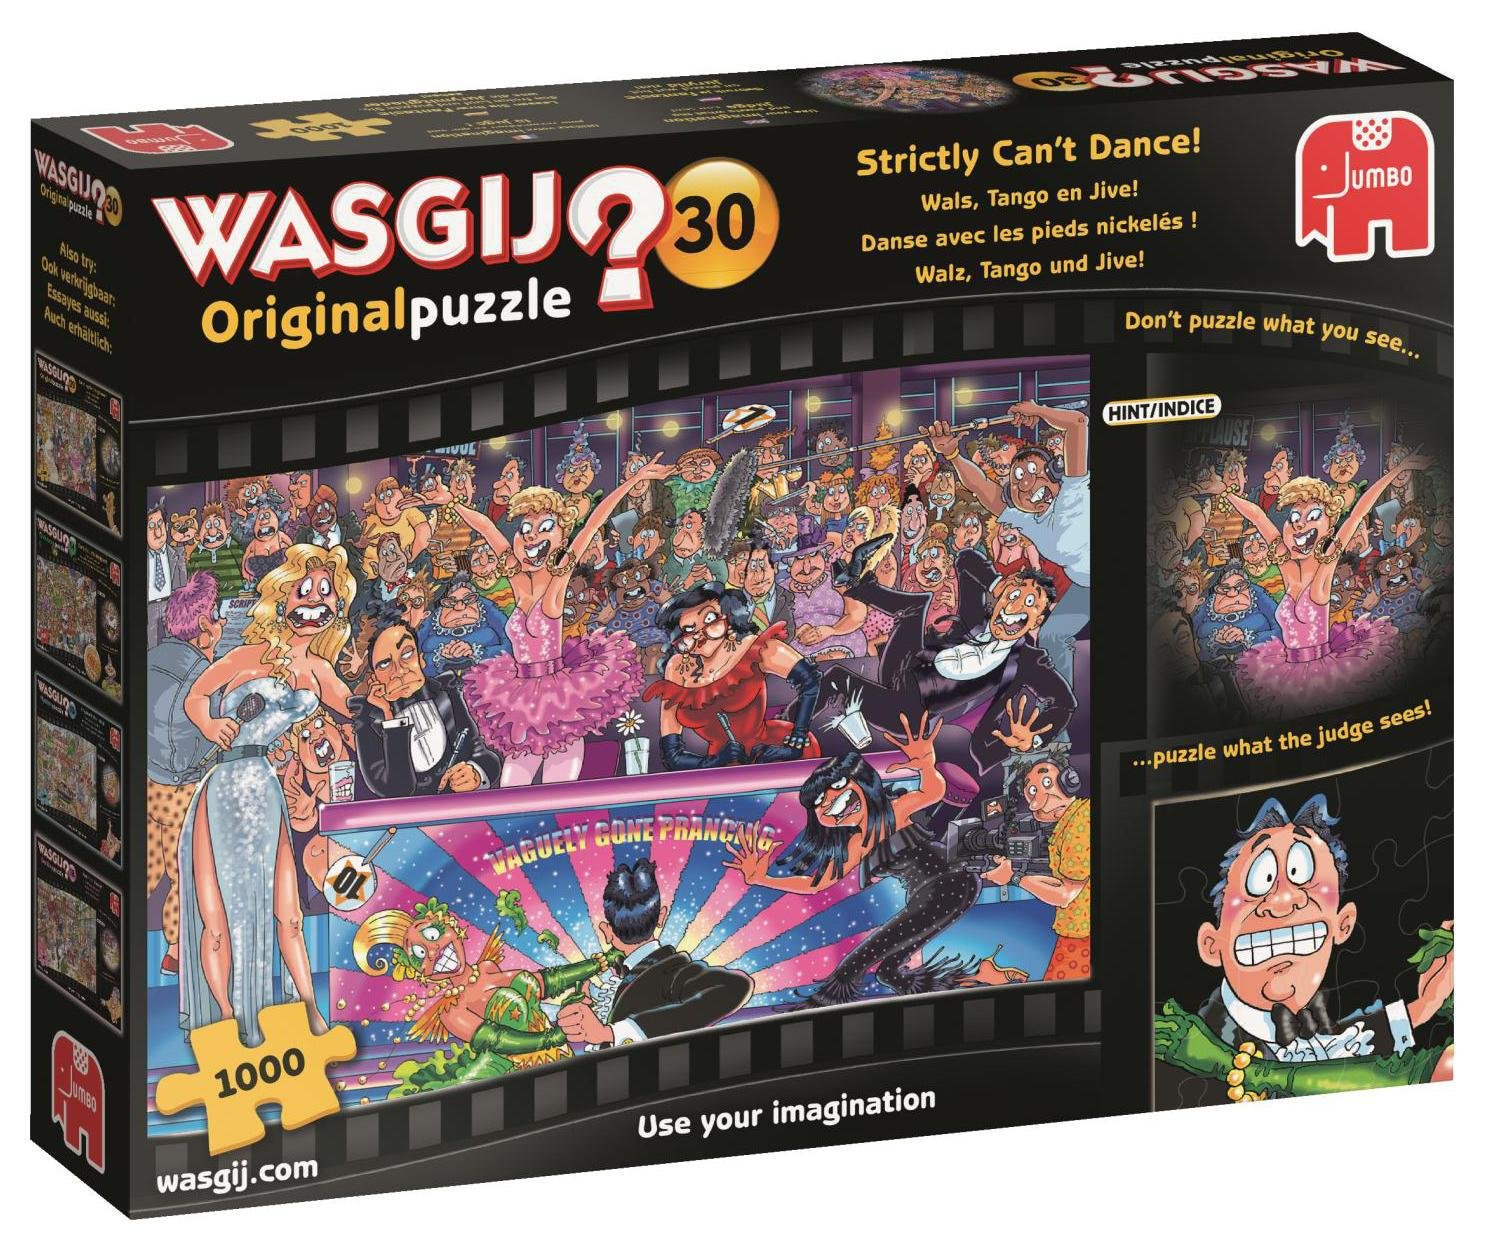 Wasgij Original 30 review